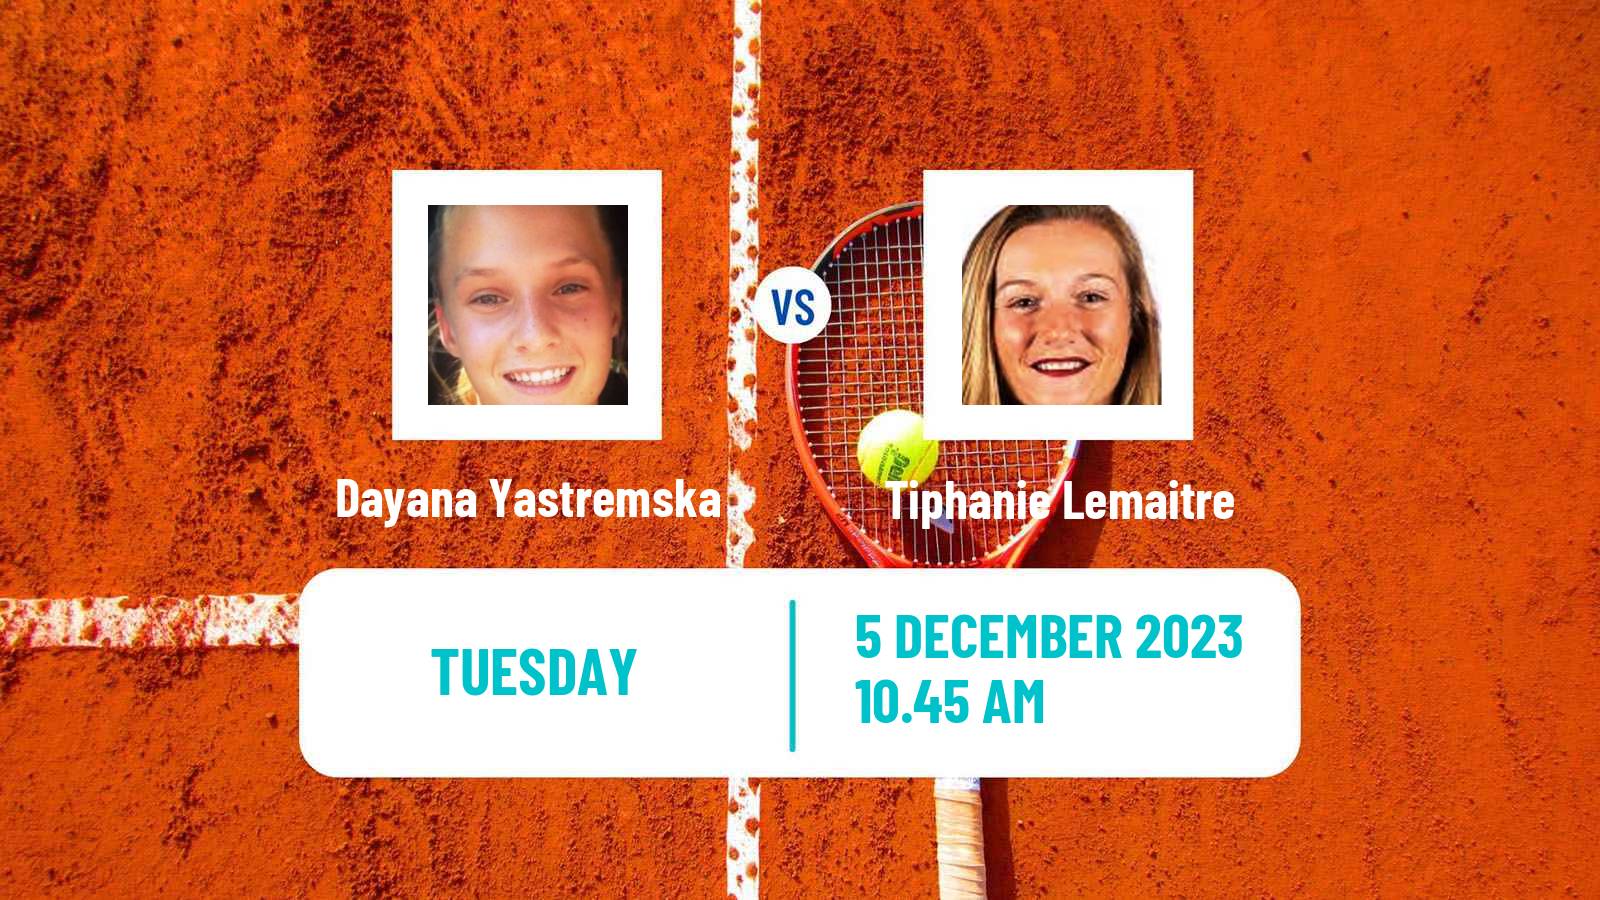 Tennis Angers Challenger Women Dayana Yastremska - Tiphanie Lemaitre